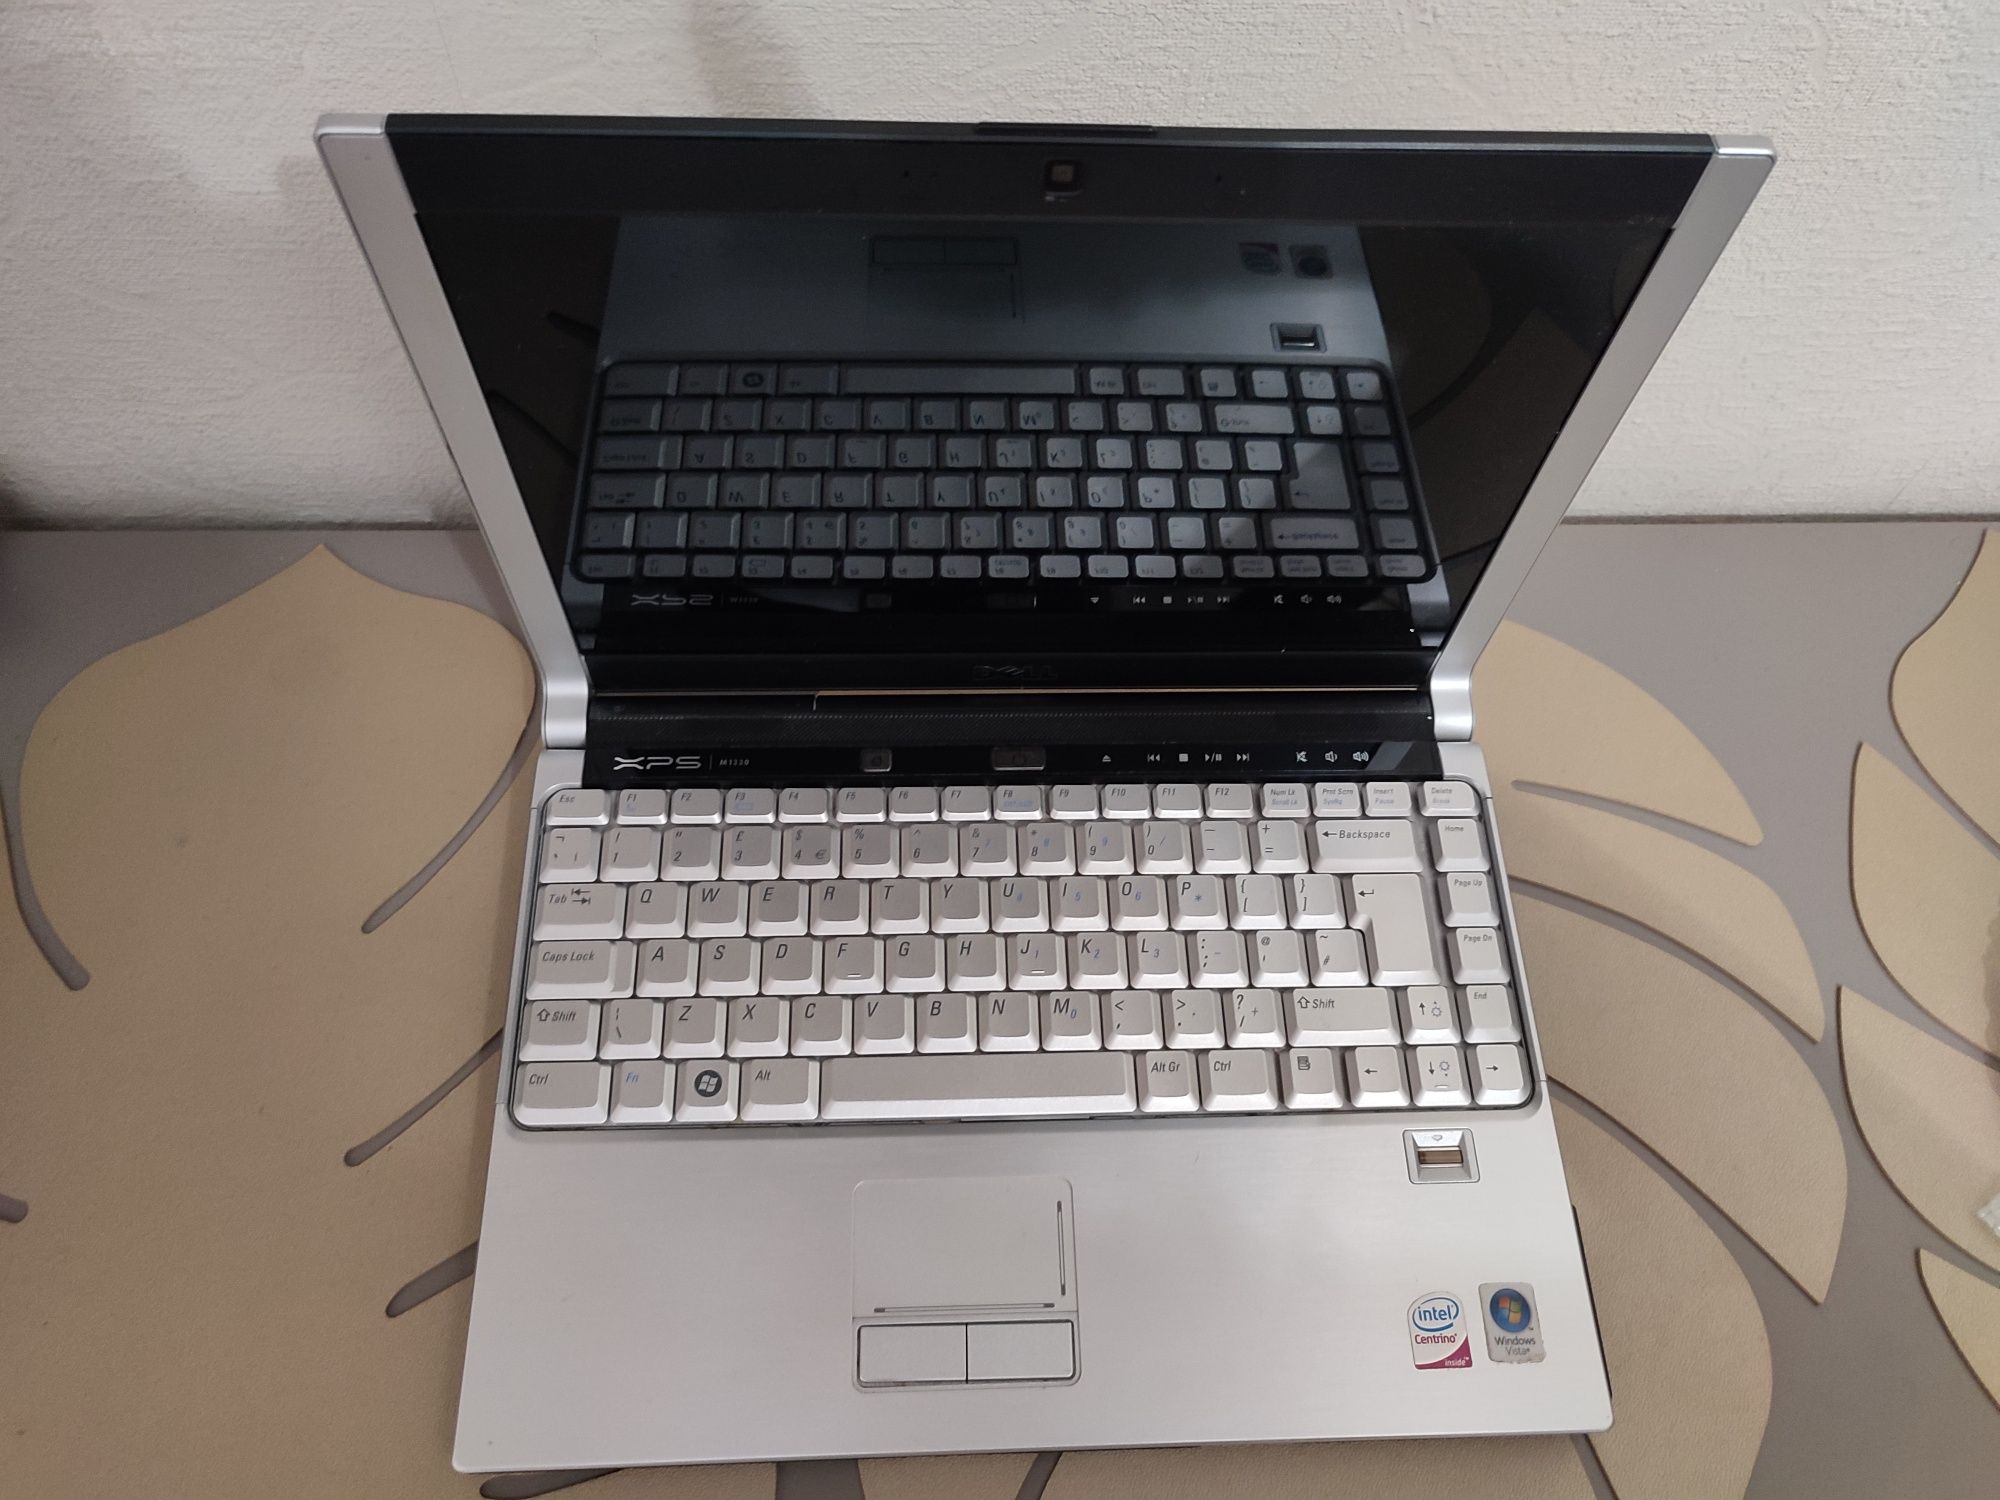 Laptop DELL XPS M1330